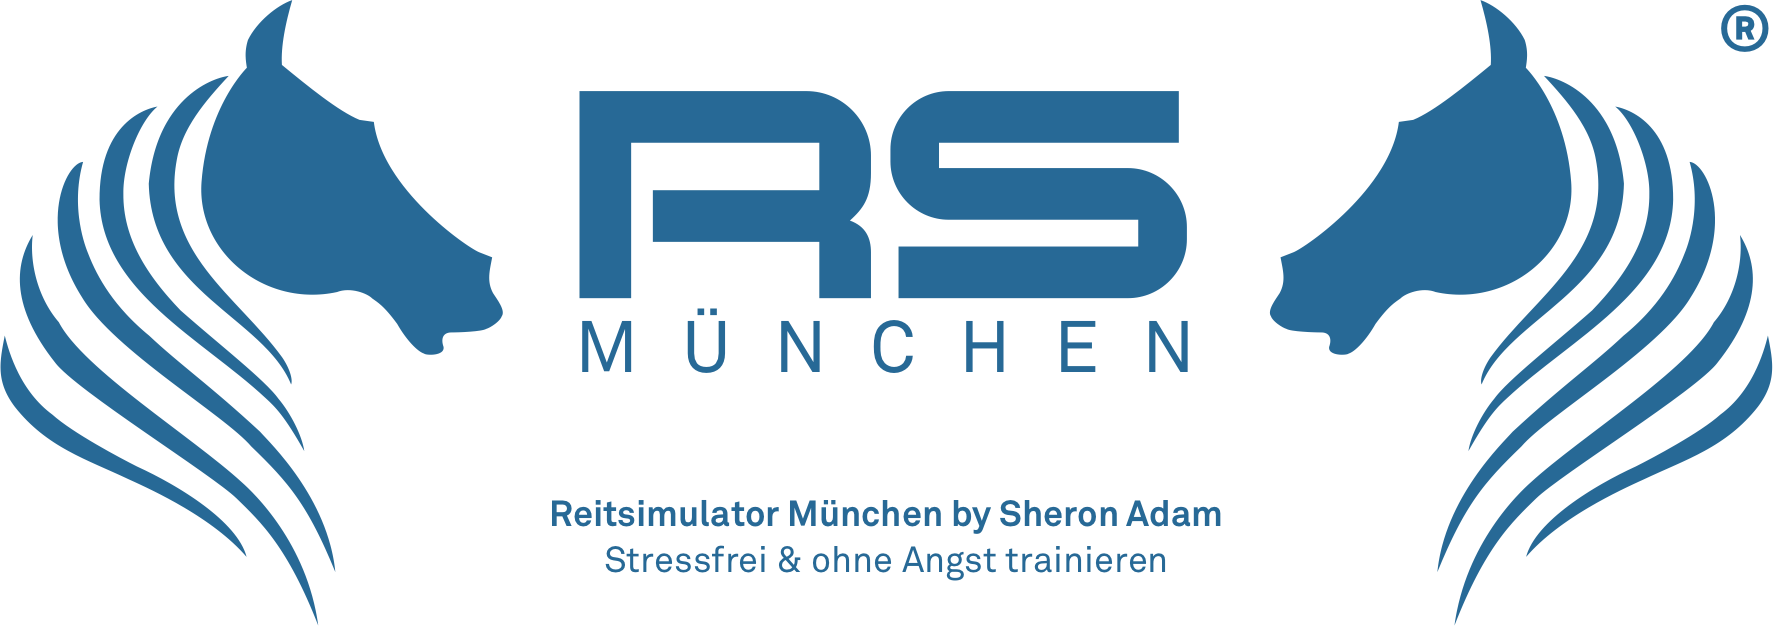 Reitsimulator München | Stressfrei und ohne Angst auf dem Pferdesimulator trainieren | by Sheron Adam